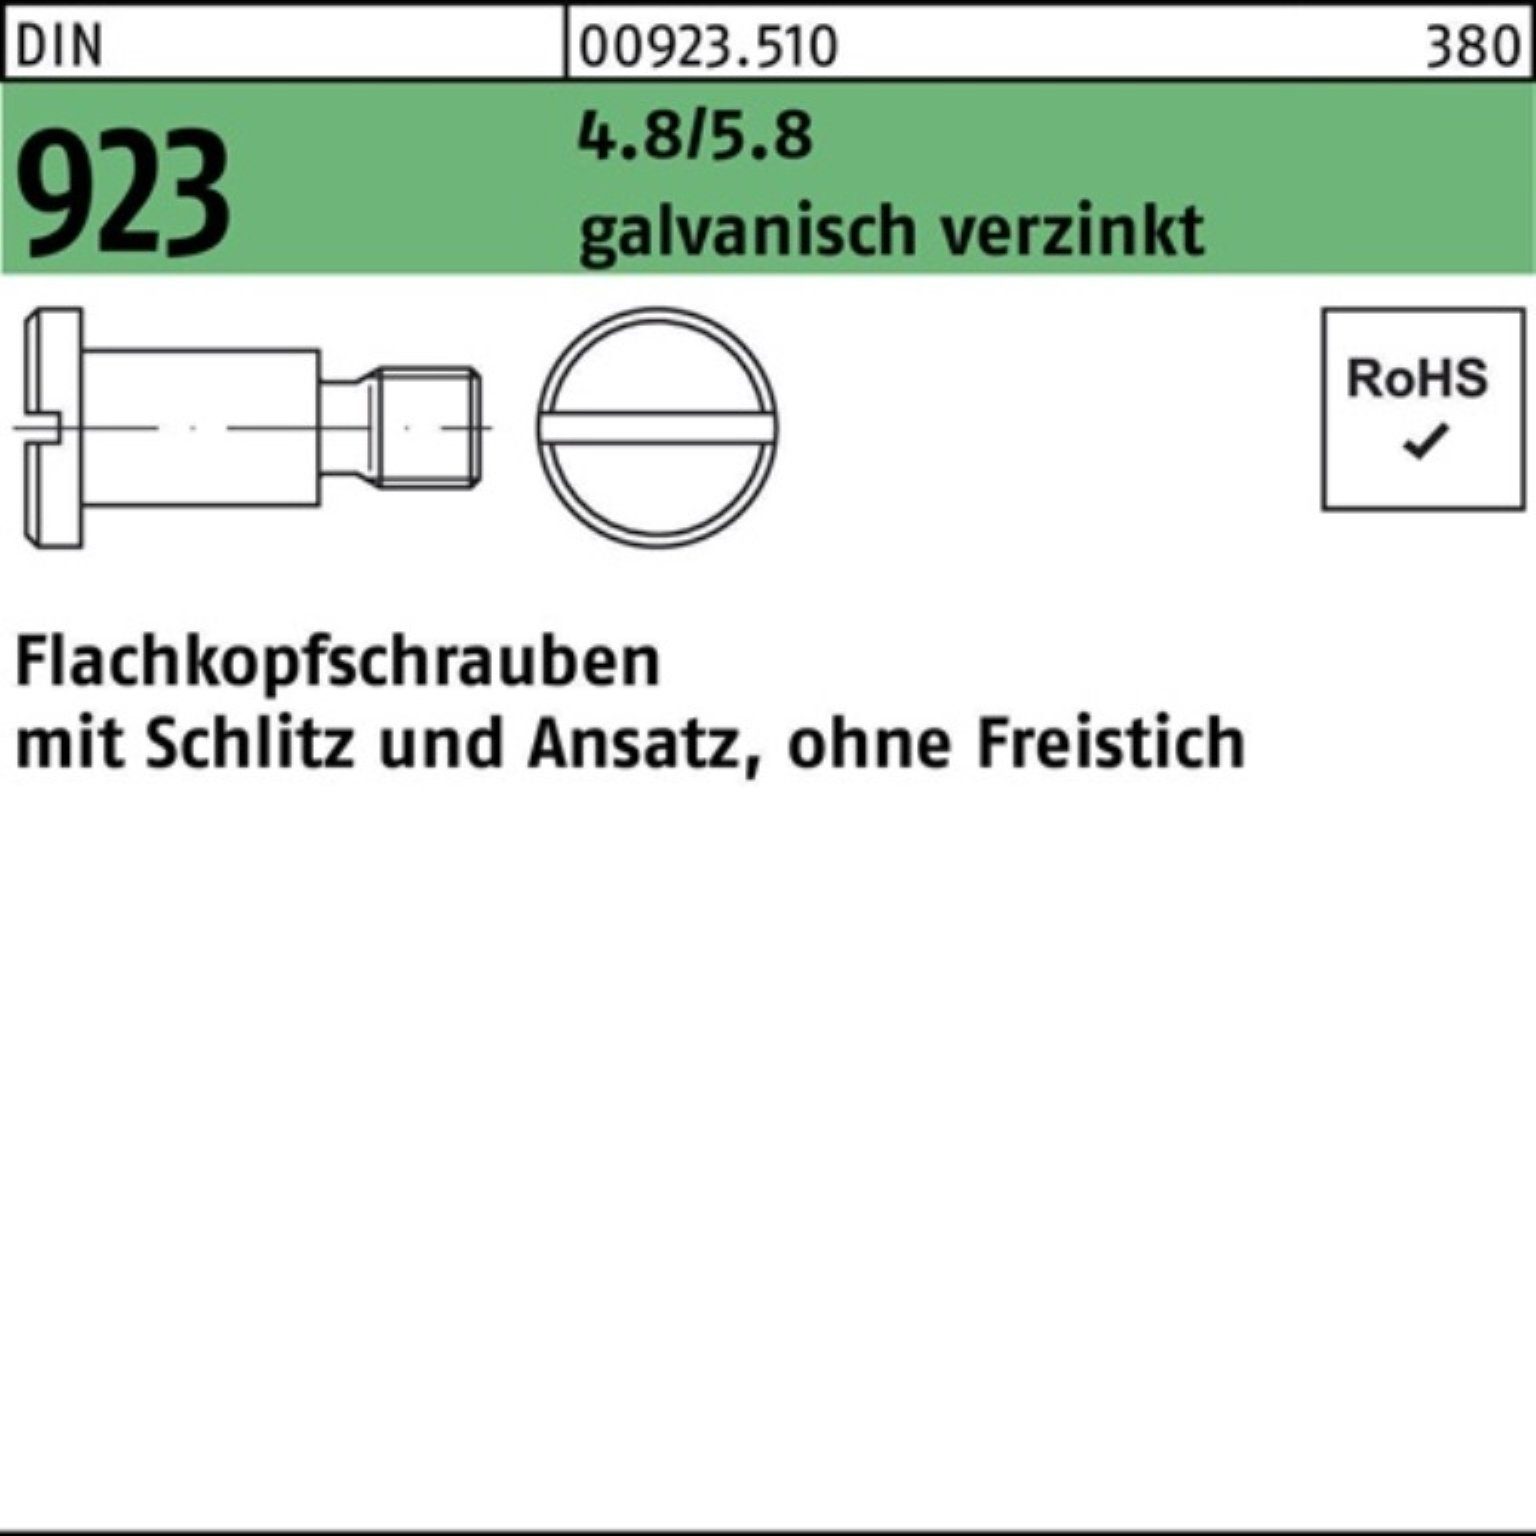 Reyher Schraube 100er Pack DIN Flachkopfschraube Schlitz/Ansatz M6x3x9,0 4.8/5.8 923 g